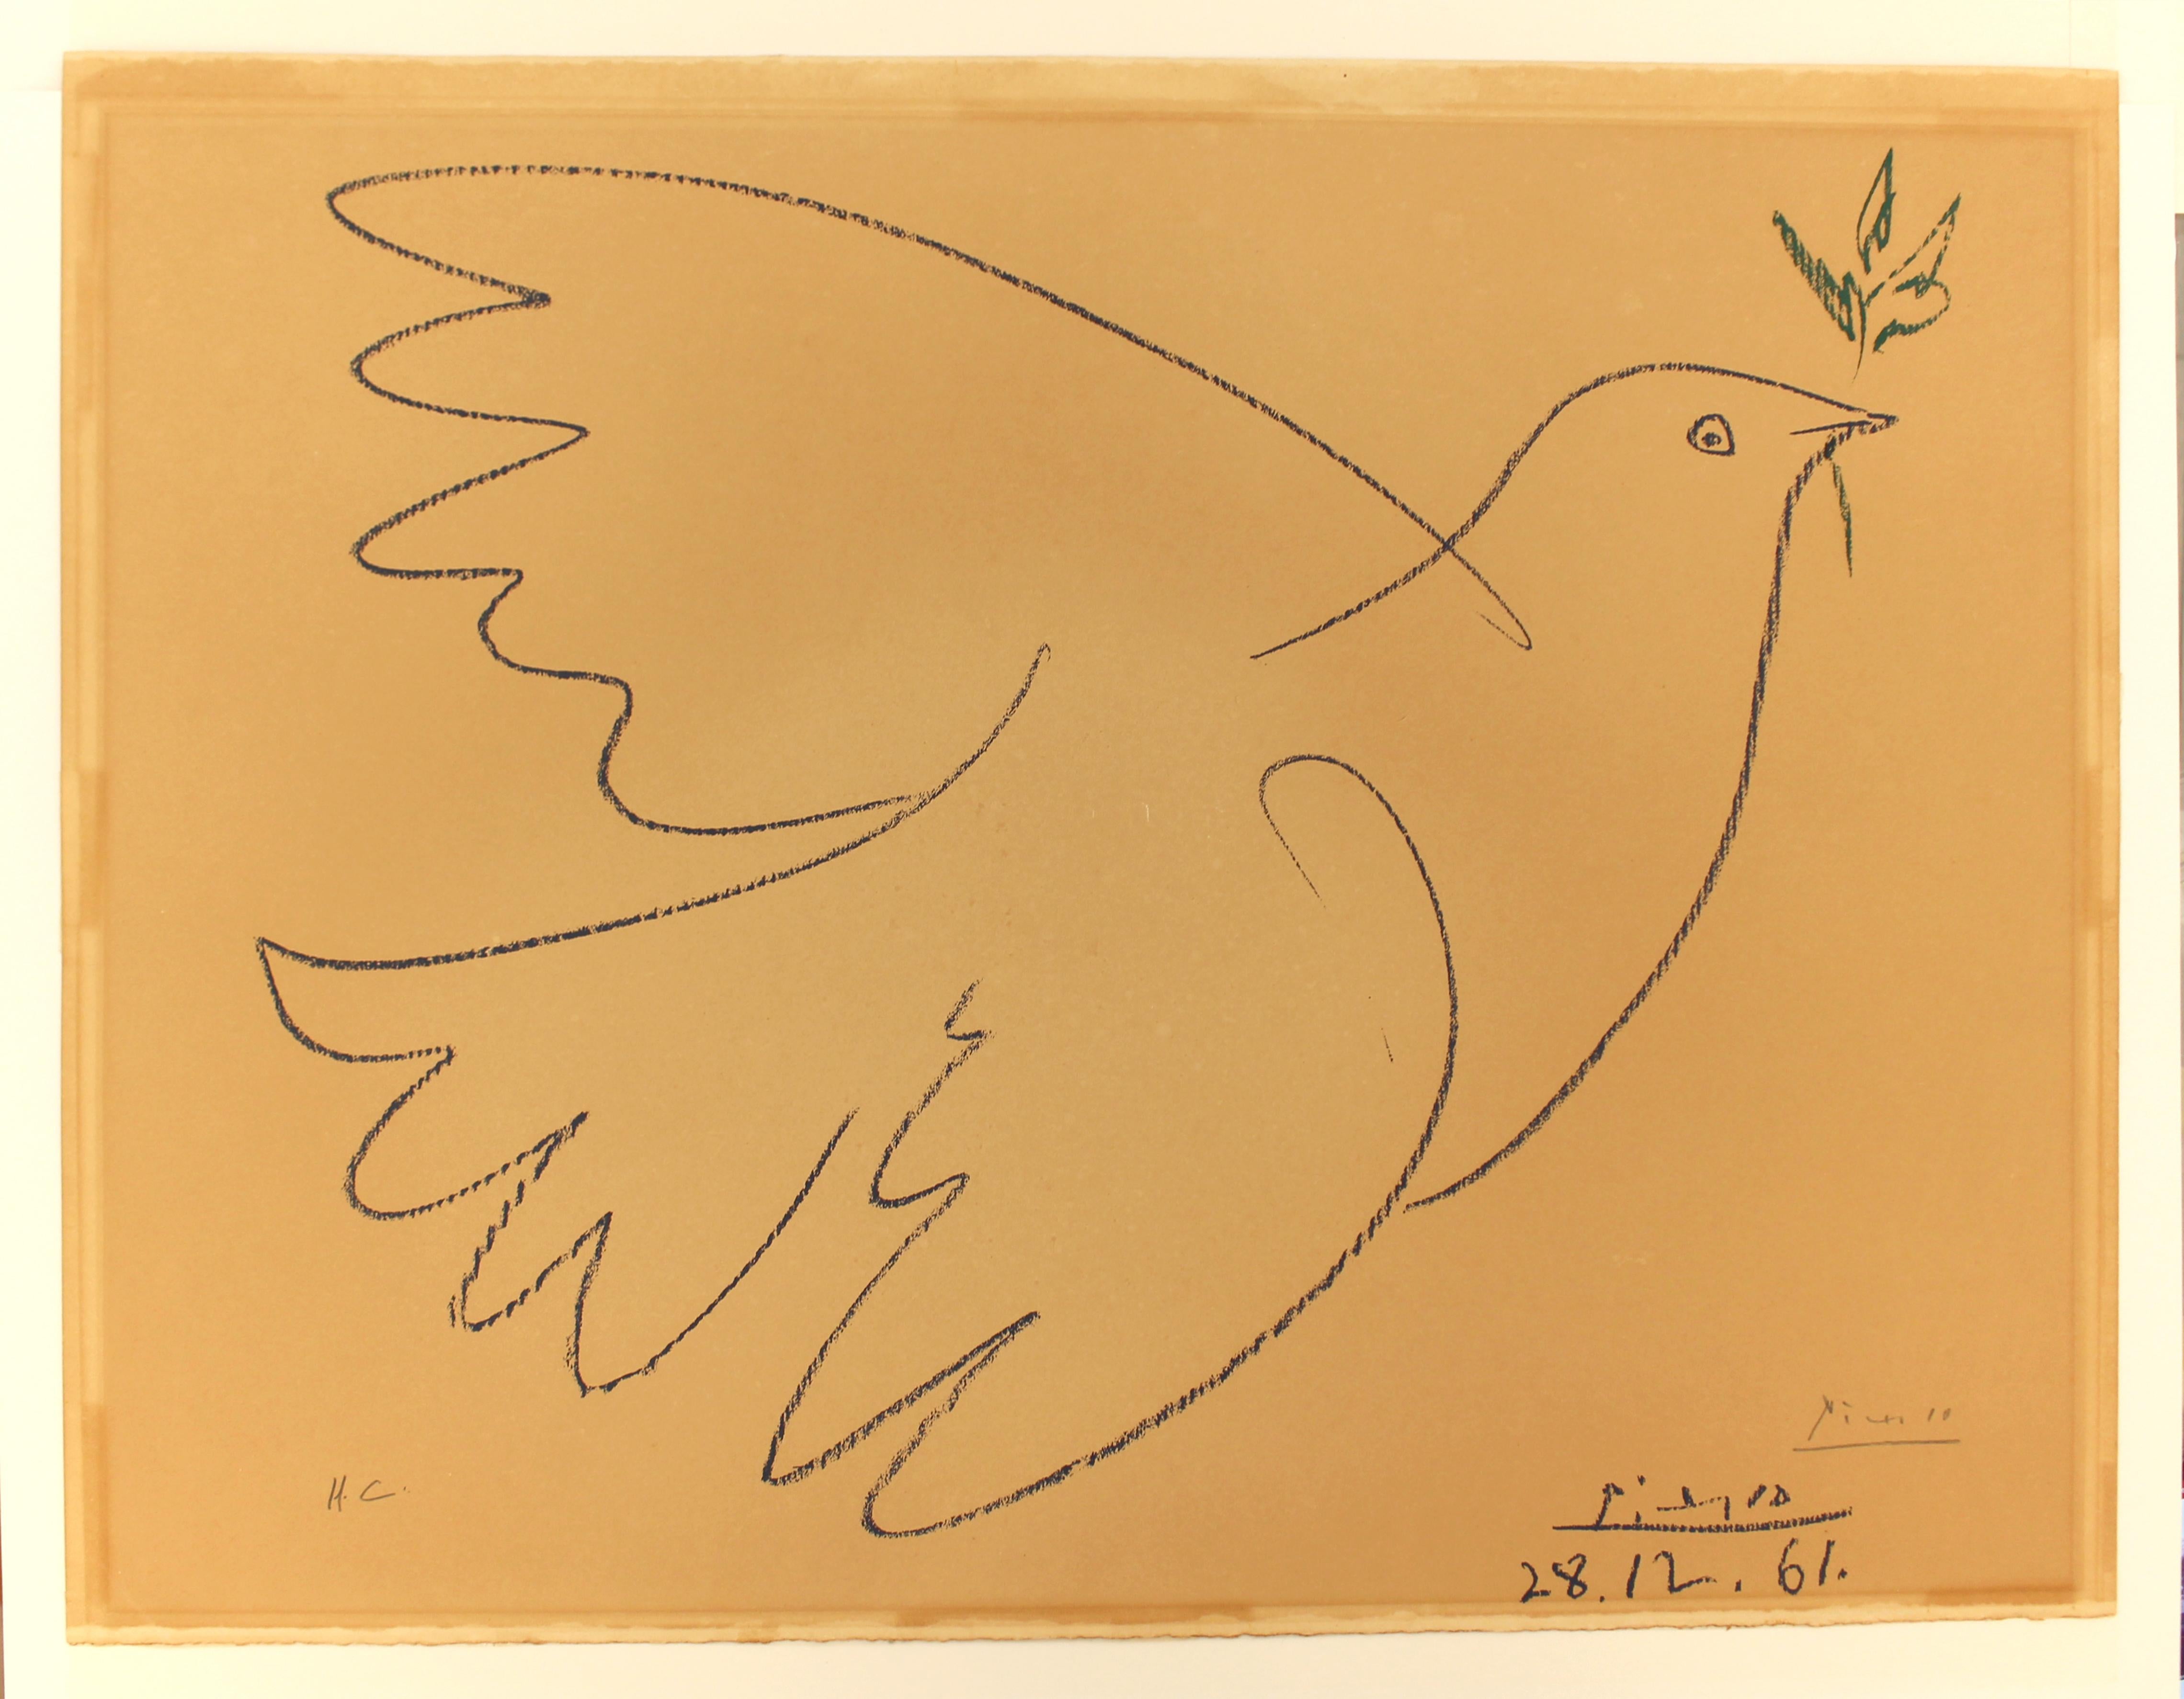 (après) Pablo Picasso
Colombe Volant, 1961
lithographie offset
51x65 cm
